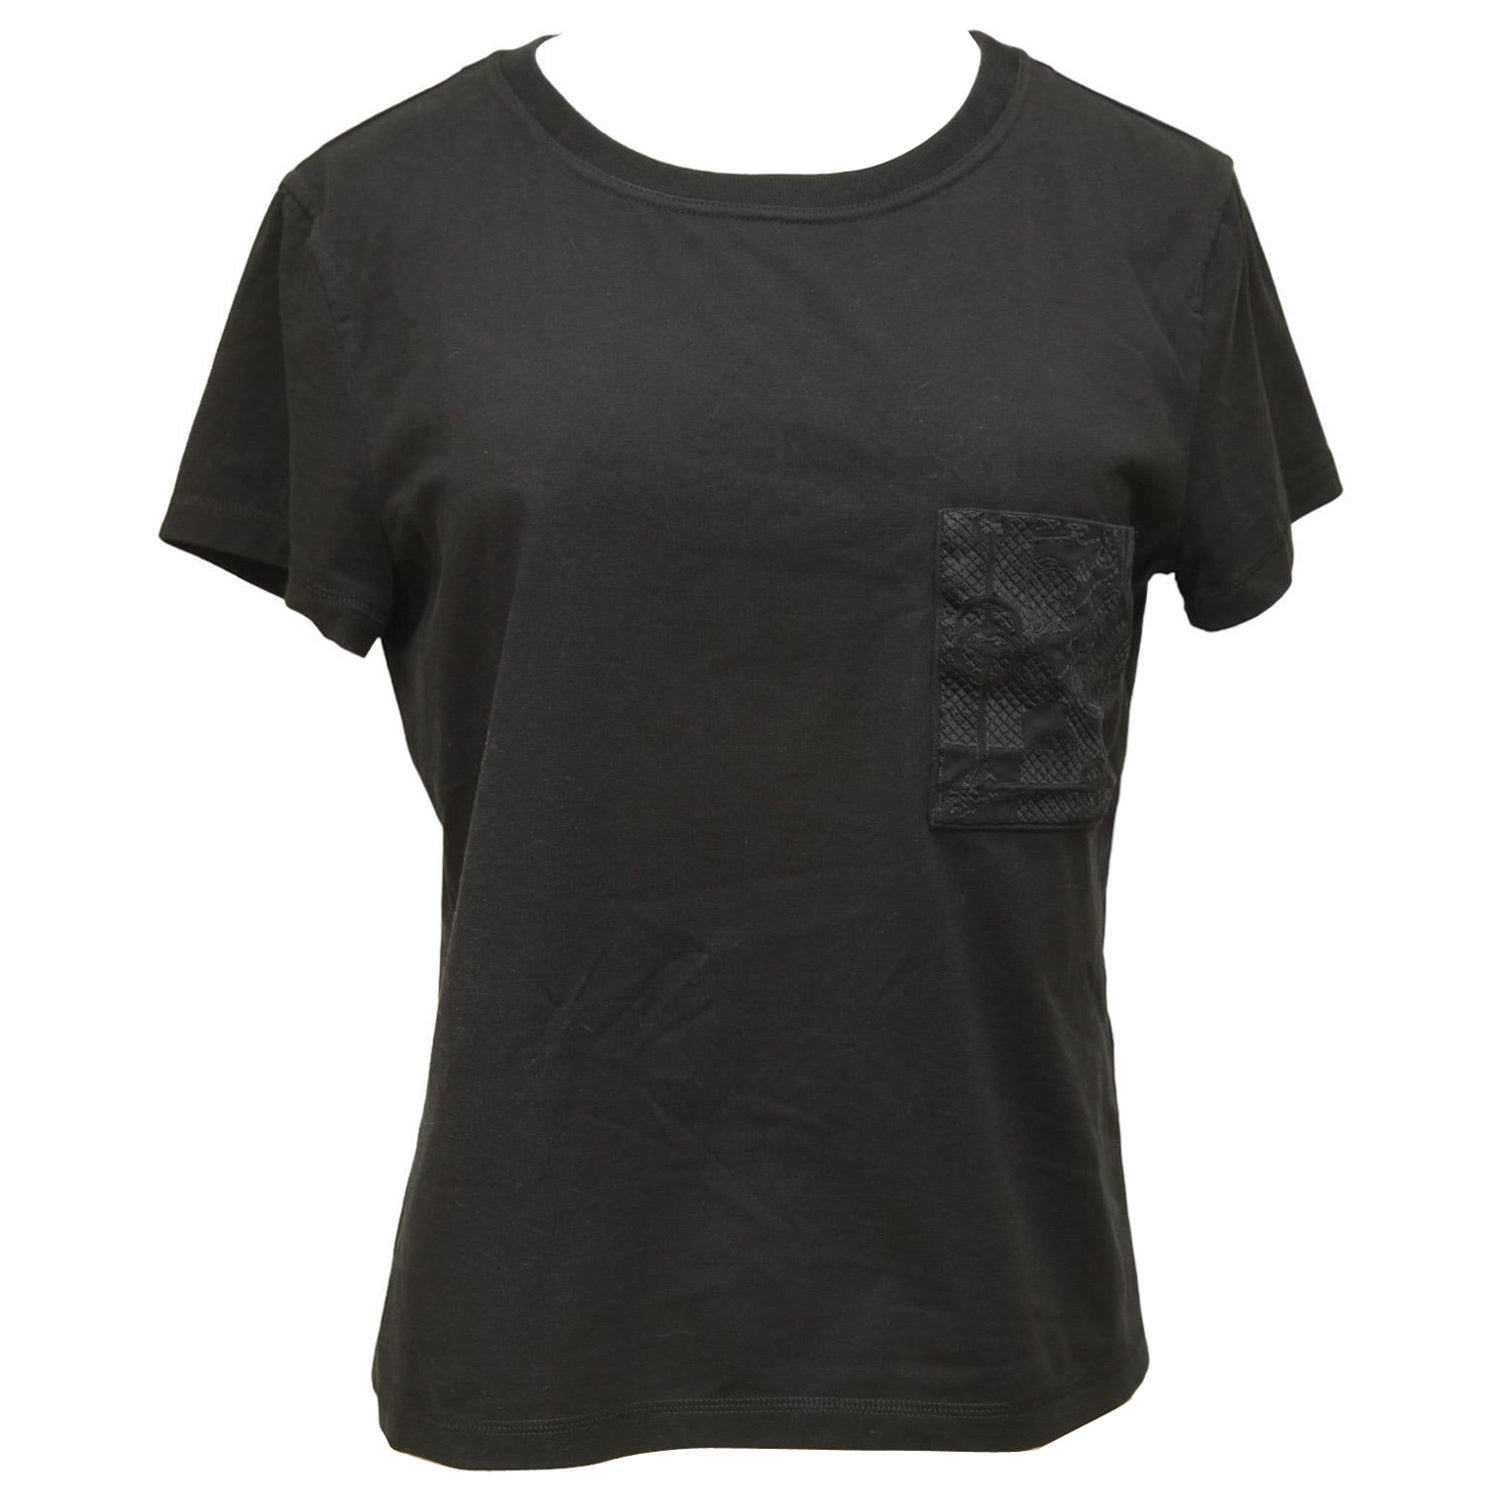 LOUIS VUITTON Signature Short-sleeved T-shirt Black. Size M0